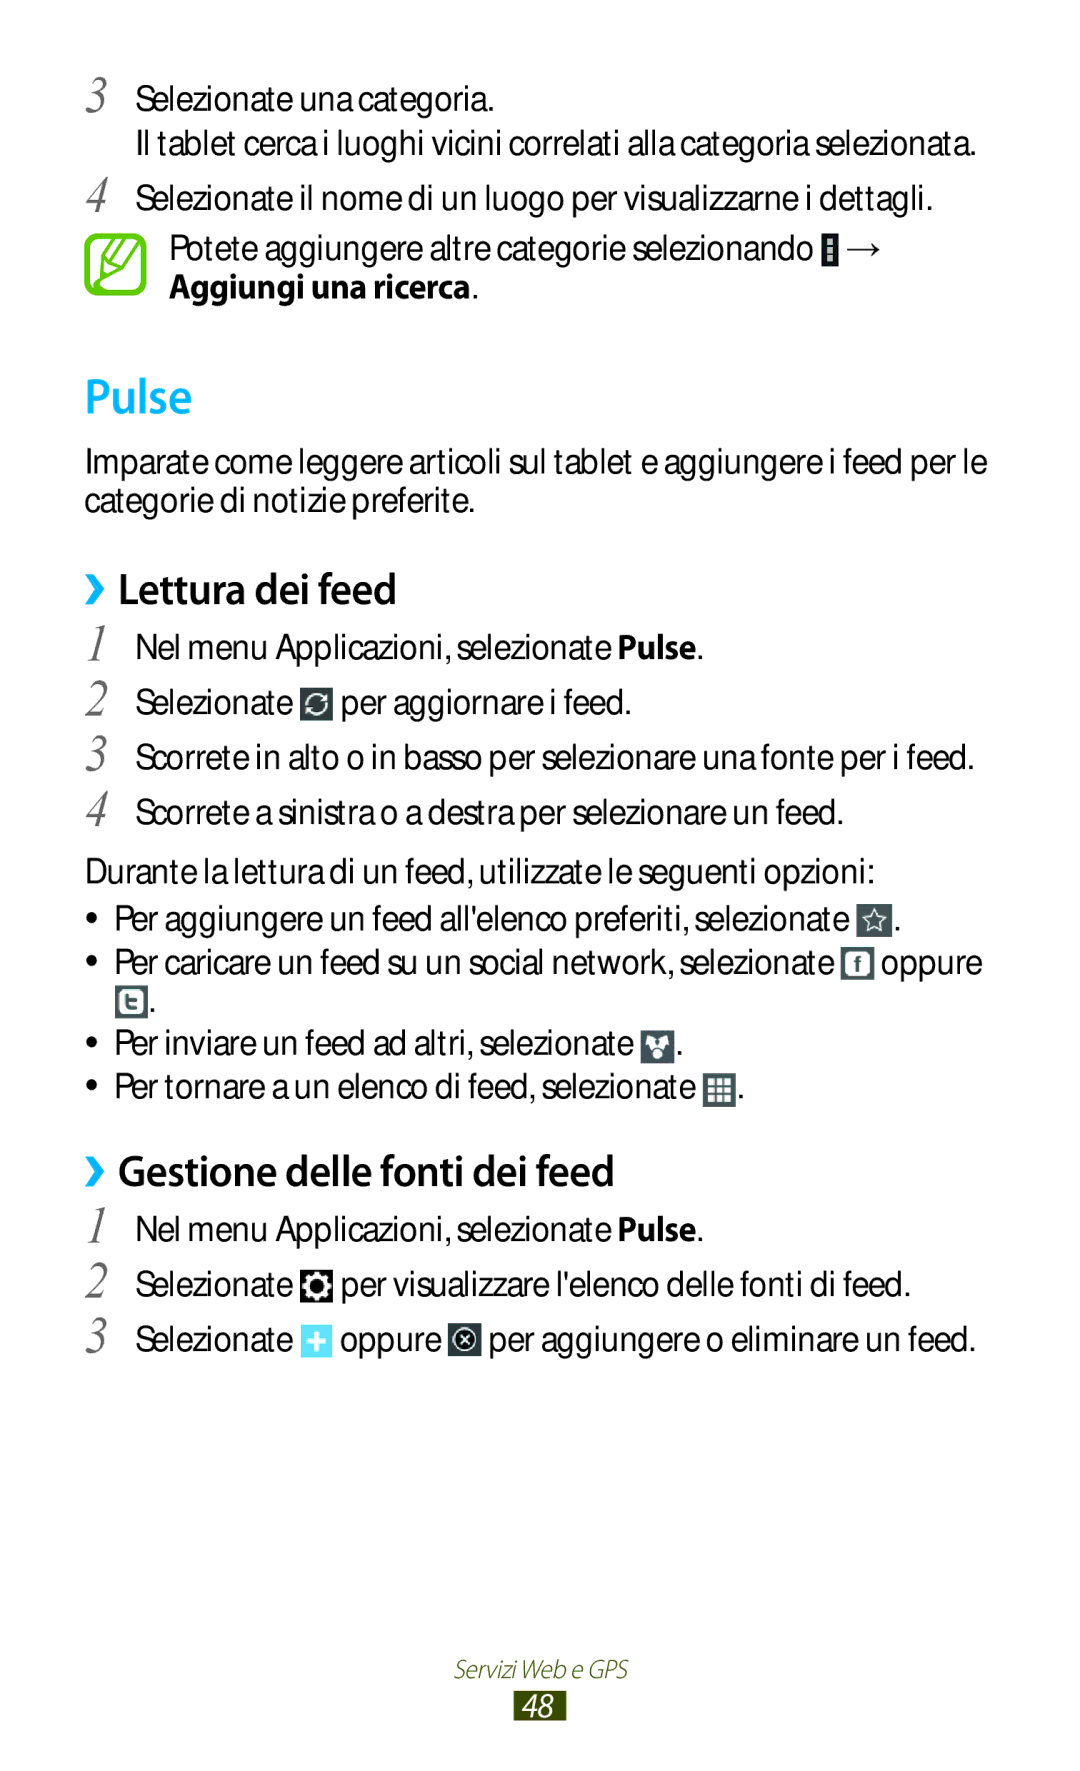 Samsung GT-P7500FKDOMN manual Pulse, ››Lettura dei feed, ››Gestione delle fonti dei feed, Selezionate una categoria 